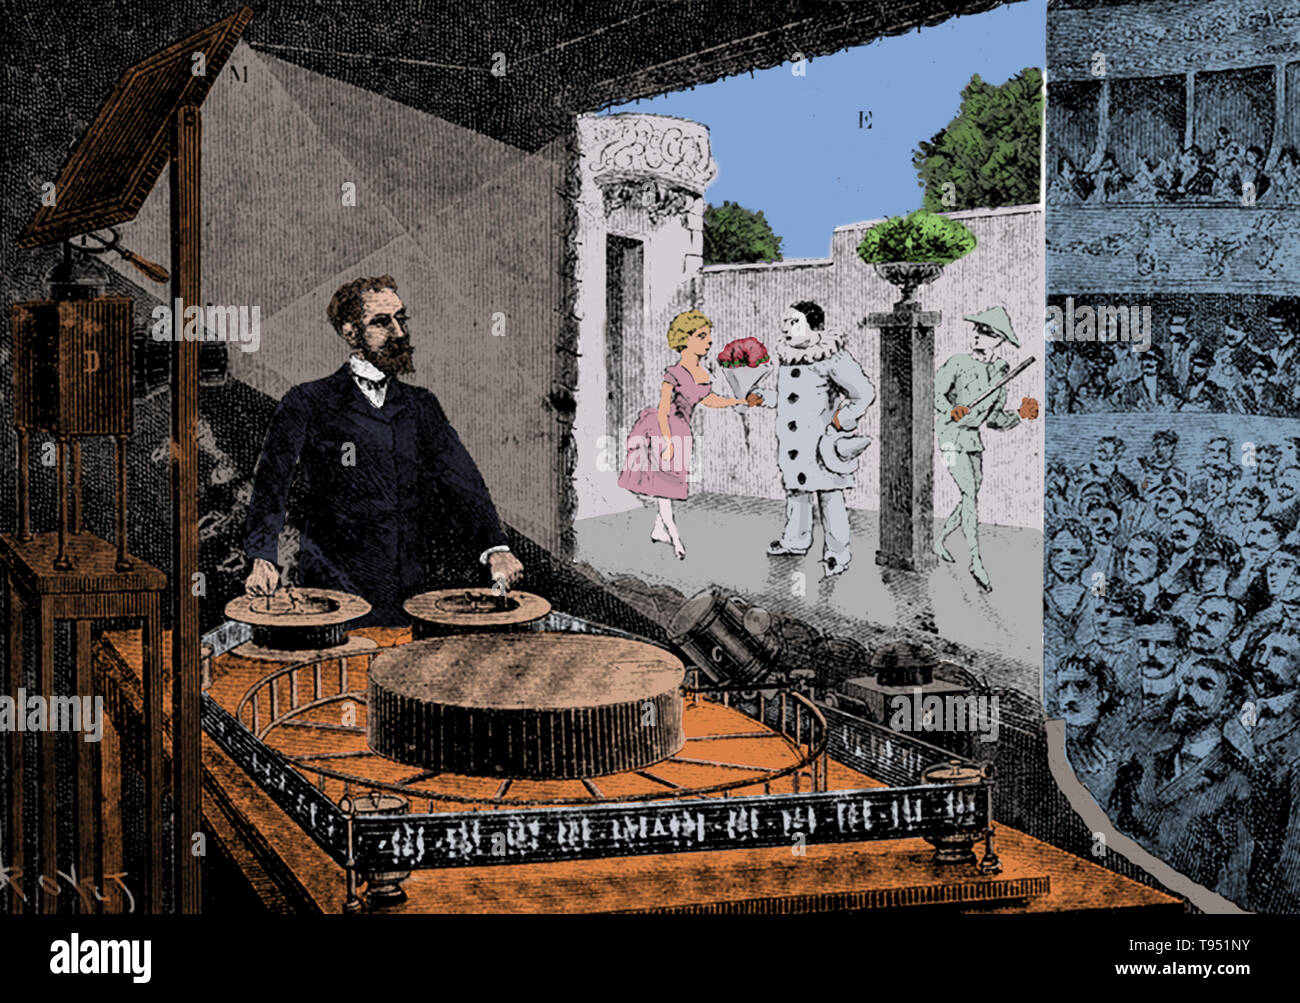 Le théâtre optique a été un déménagement photo spectacle présenté par Charles-émile Reynaud en 1892. C'était la première présentation de projections d'images en mouvement à un auditoire, antérieurs à Auguste et Louis Lumière's première exécution publique par trois ans. En 1876, Reynaud, un inventeur français, avait créé le Praxinoscope, une amélioration du zootrope. En 1878, il a produit le Praxinoscope Théâtre. Banque D'Images